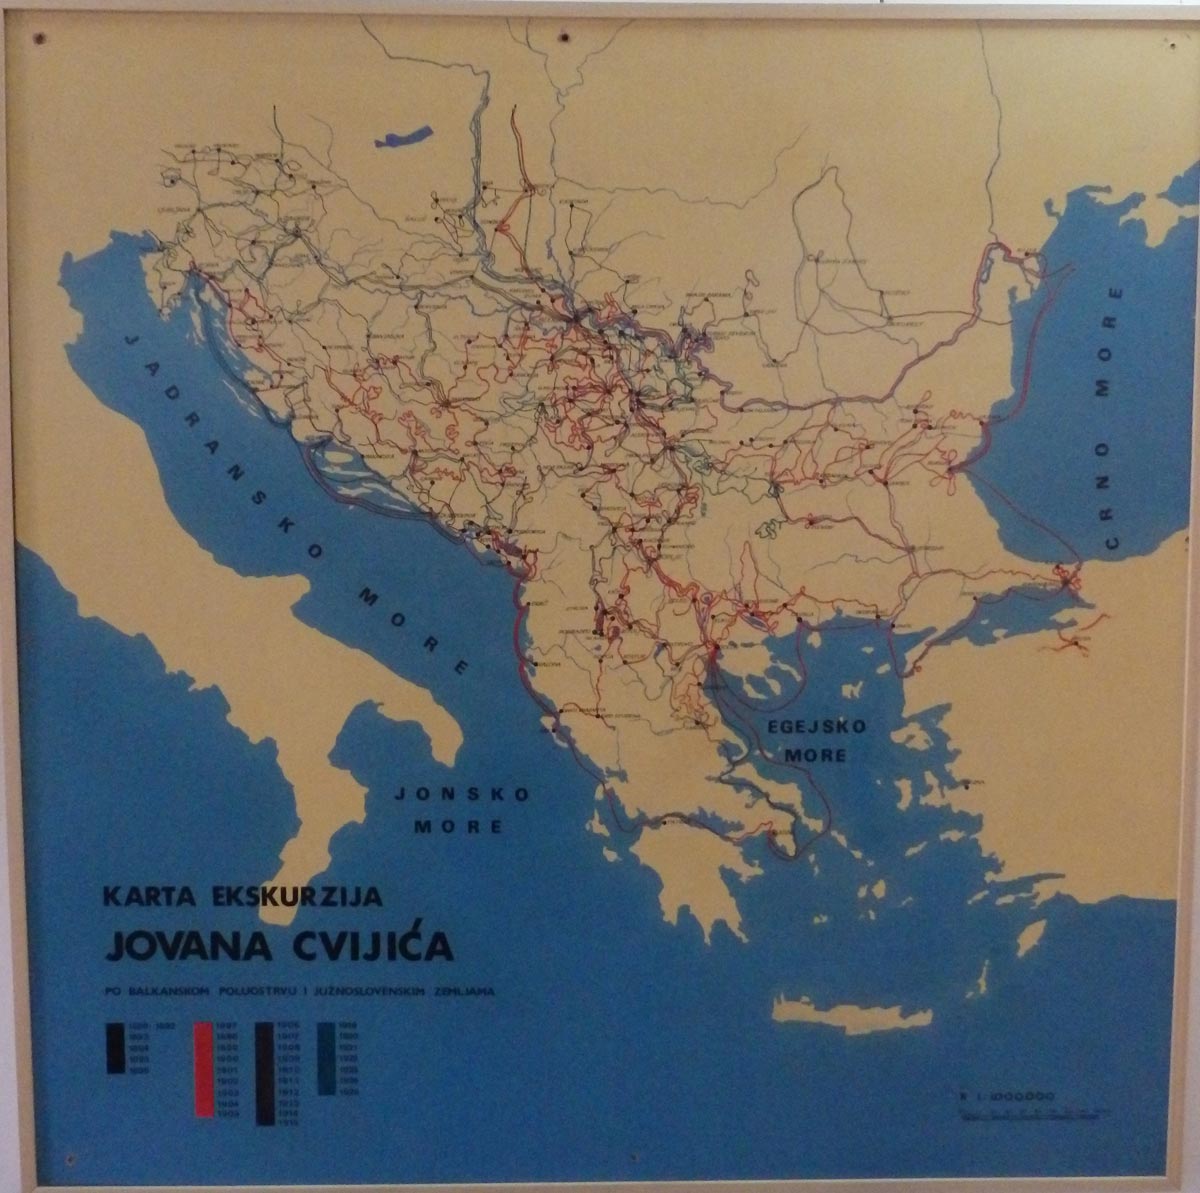 Карта екскурзија Јована Цвијића, Музеј града Београда, ЈЦ